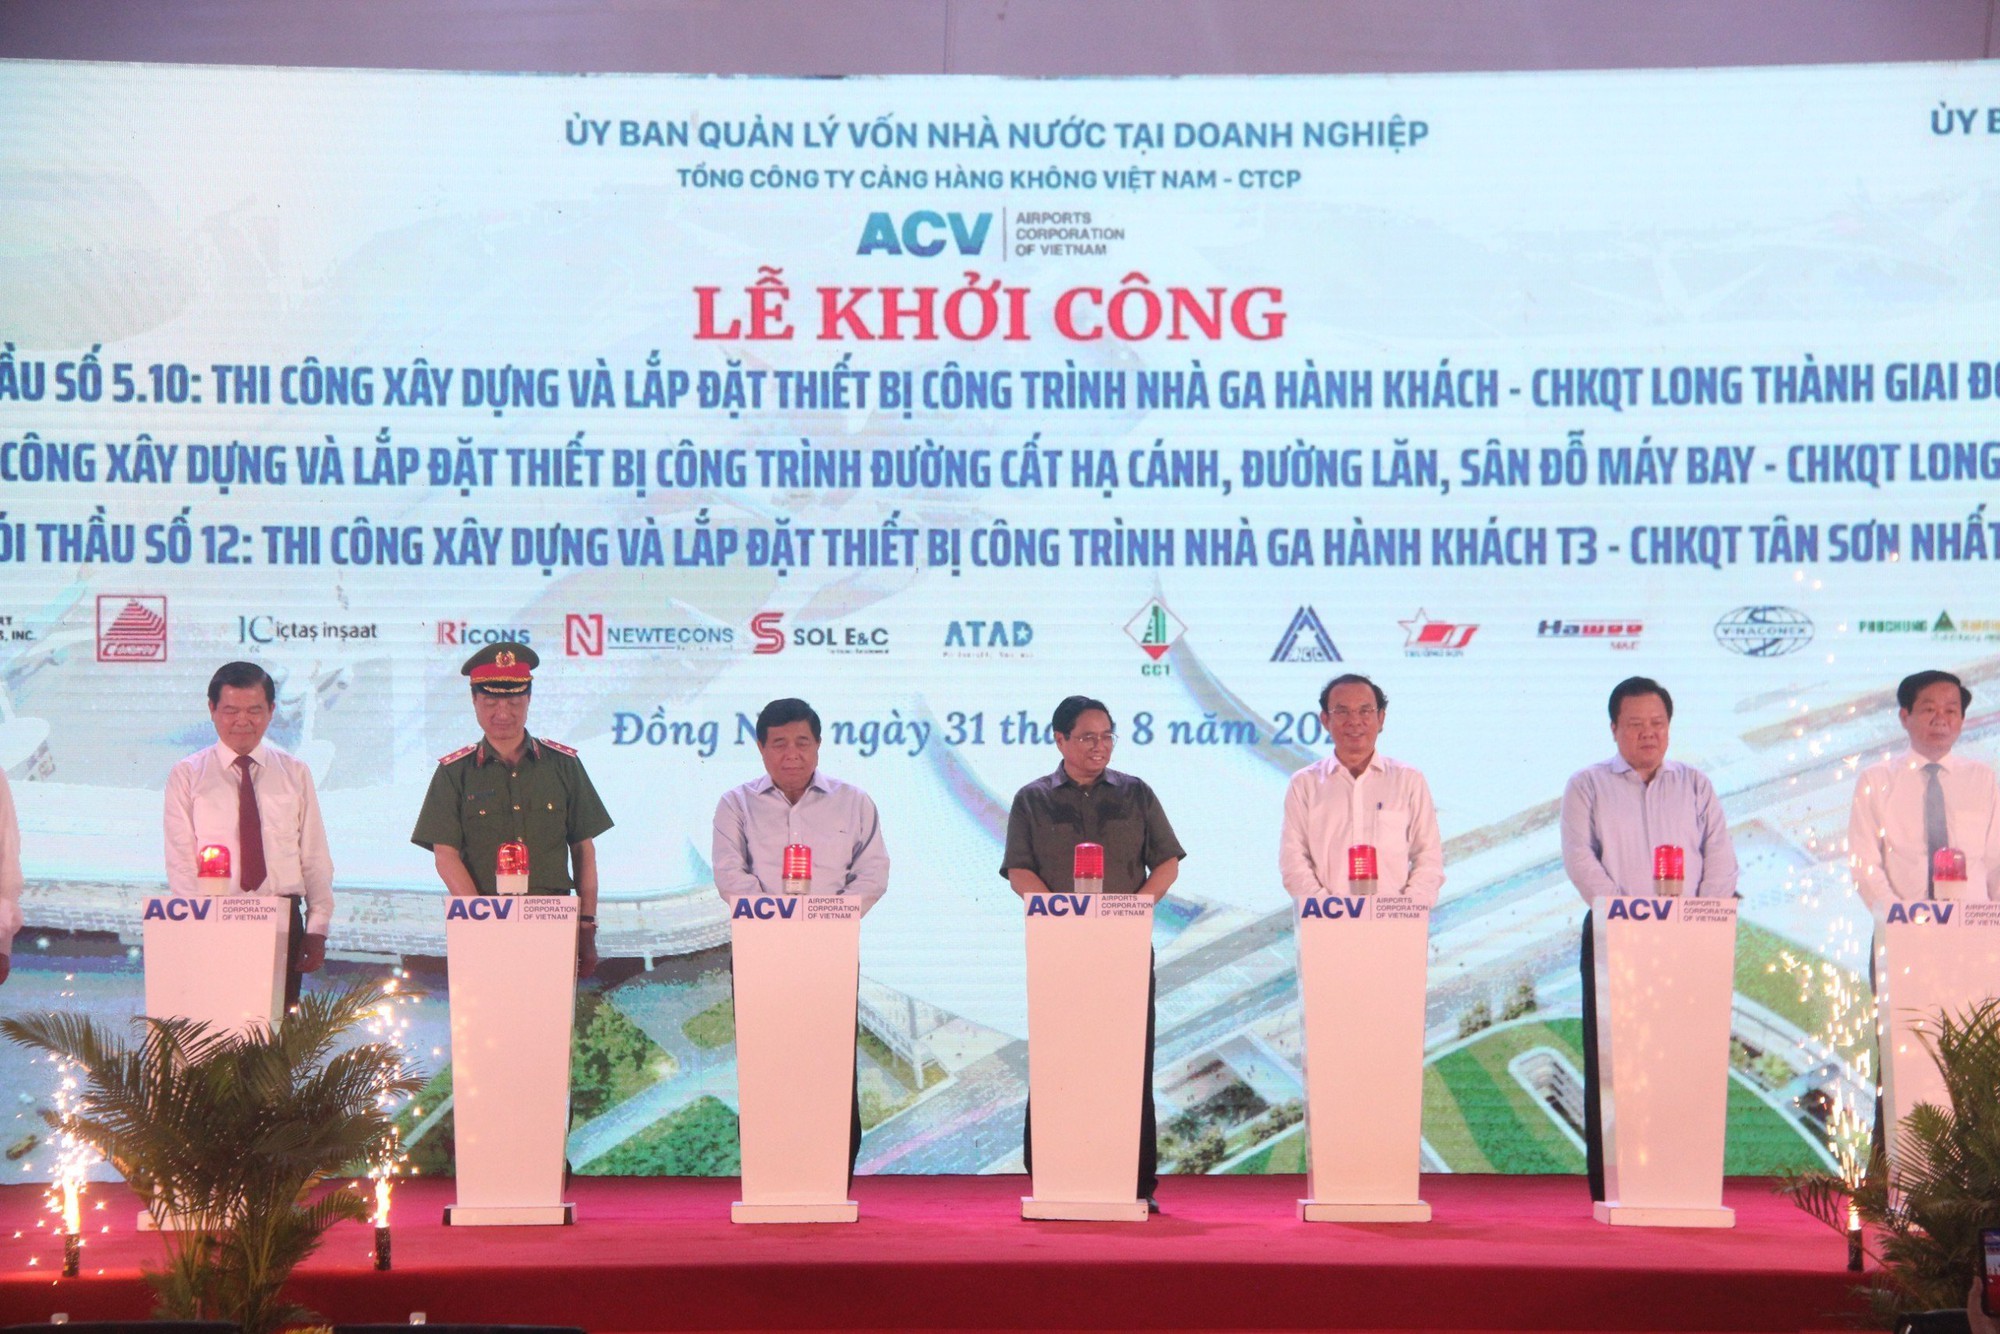 Thủ tướng Phạm Minh Chính bấm nút khởi công nhà ga hành khách sân bay Long Thành - Ảnh 1.